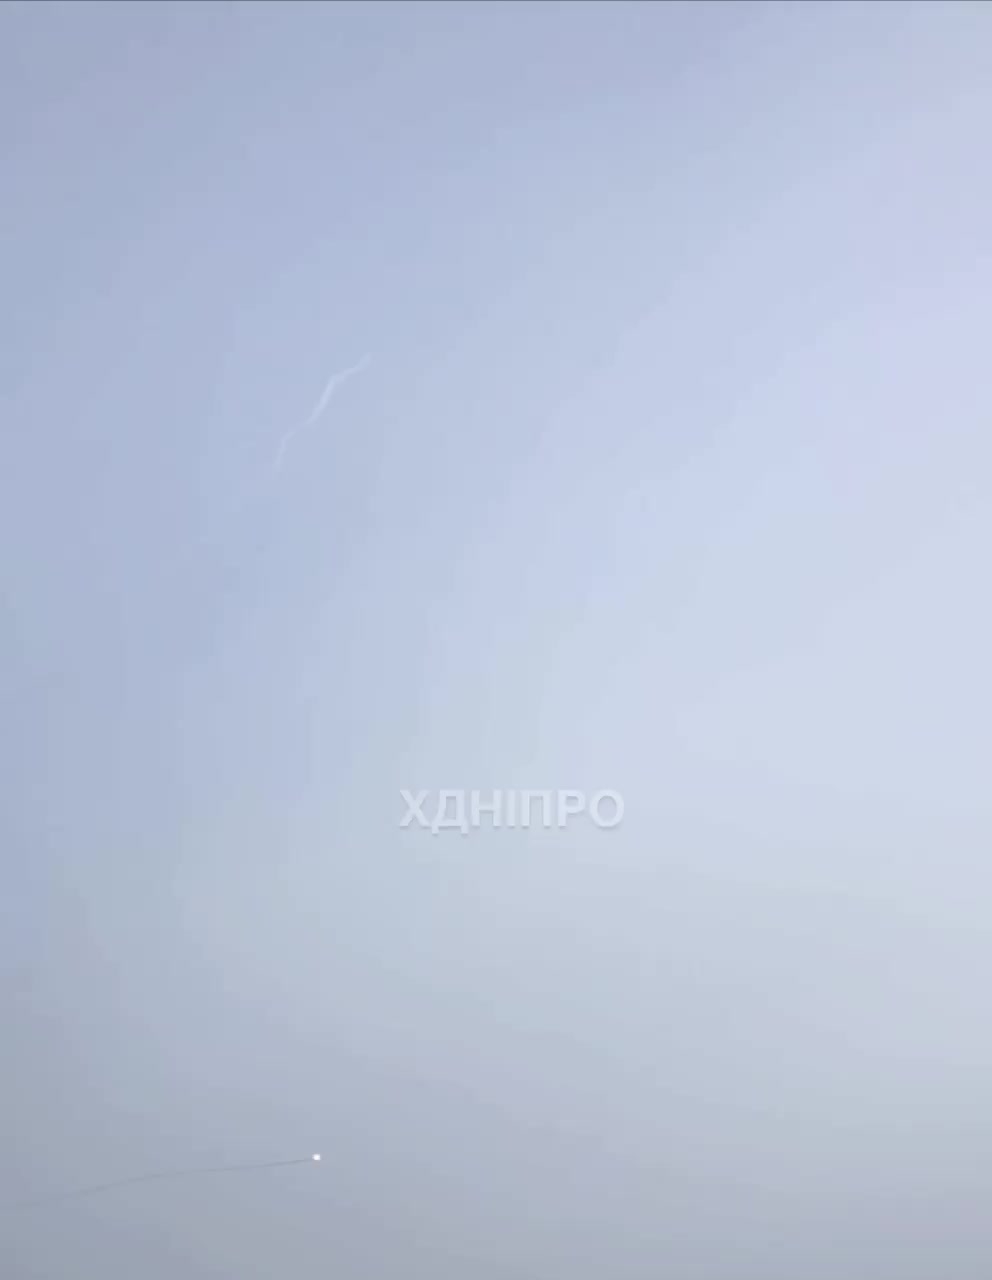 أسقطت الدفاعات الجوية صاروخاً فوق مدينة دنيبرو